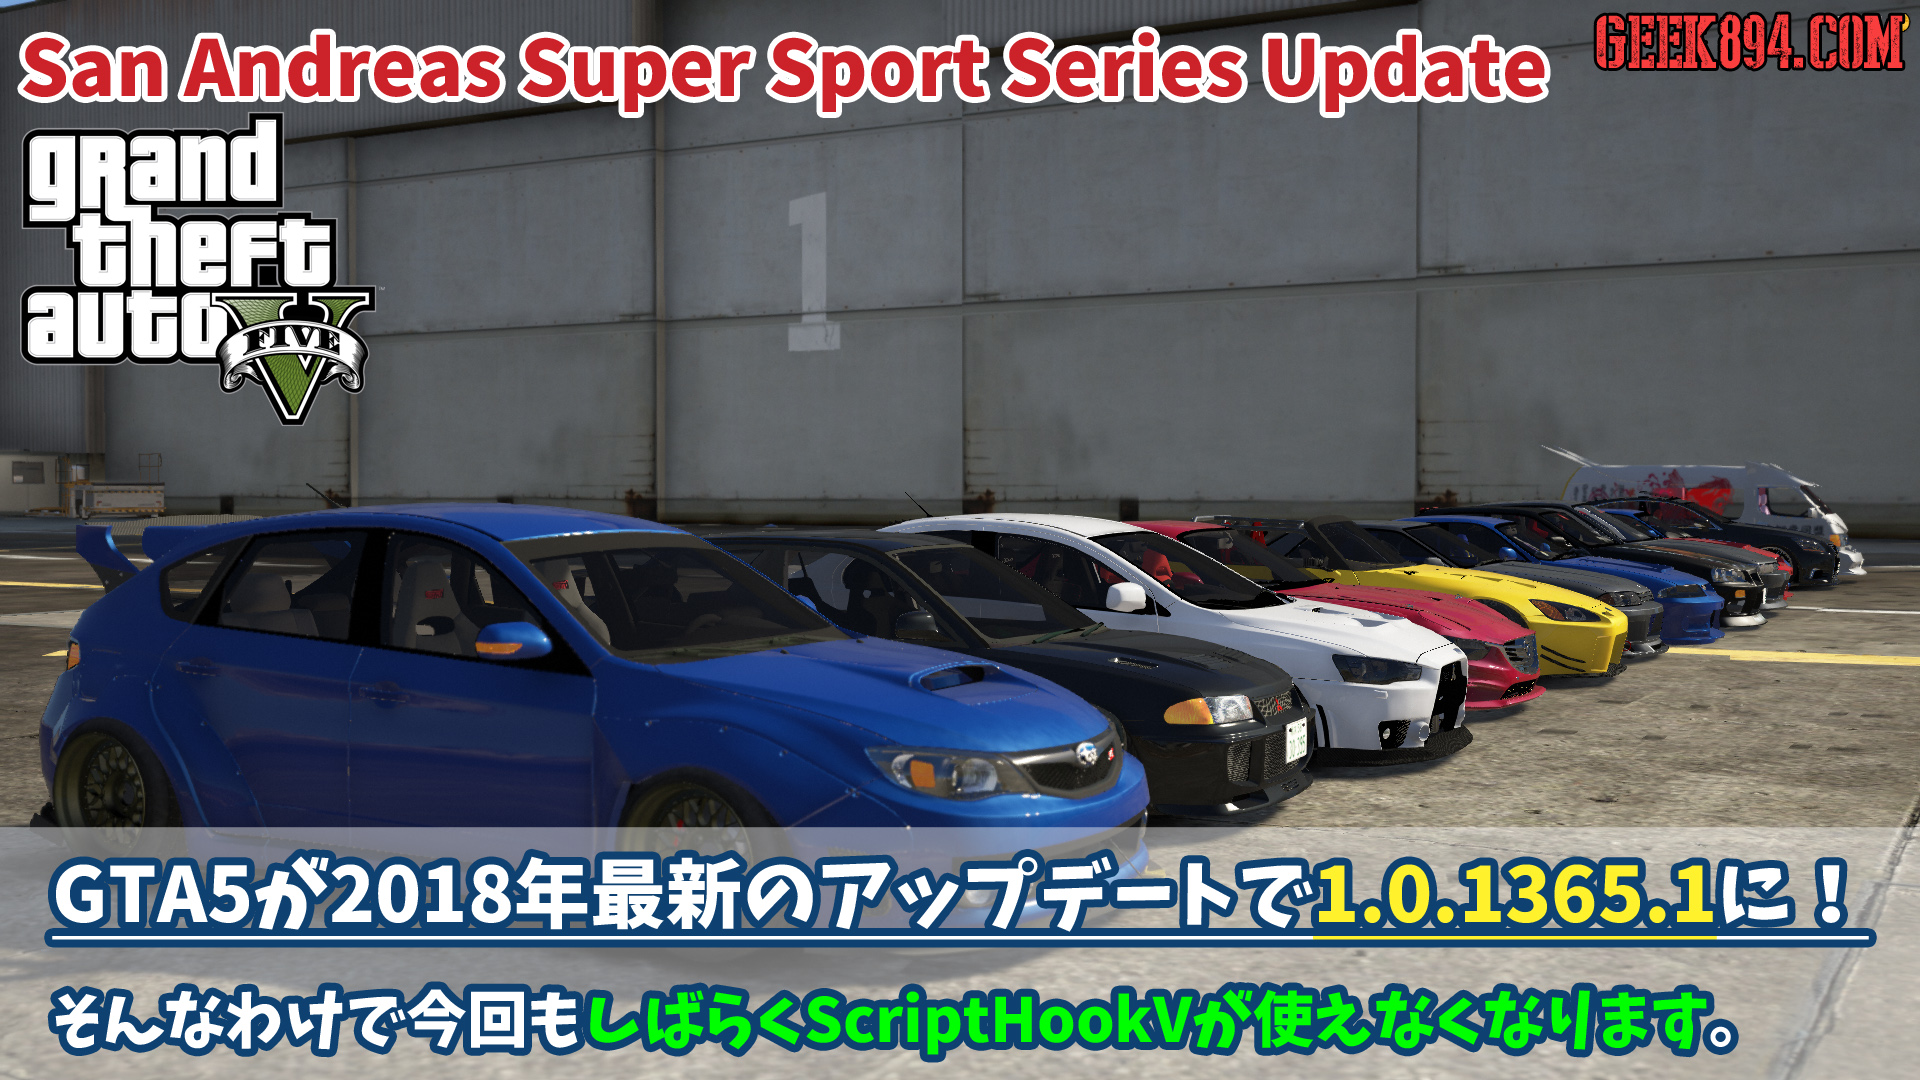 Gta5が18年最新のアップデートsan Andreas Super Sport Series Updateで1 0 1365 1に しばらくはスクリプトmodが使用不可だけど案外おもしろそう Geek4 Com